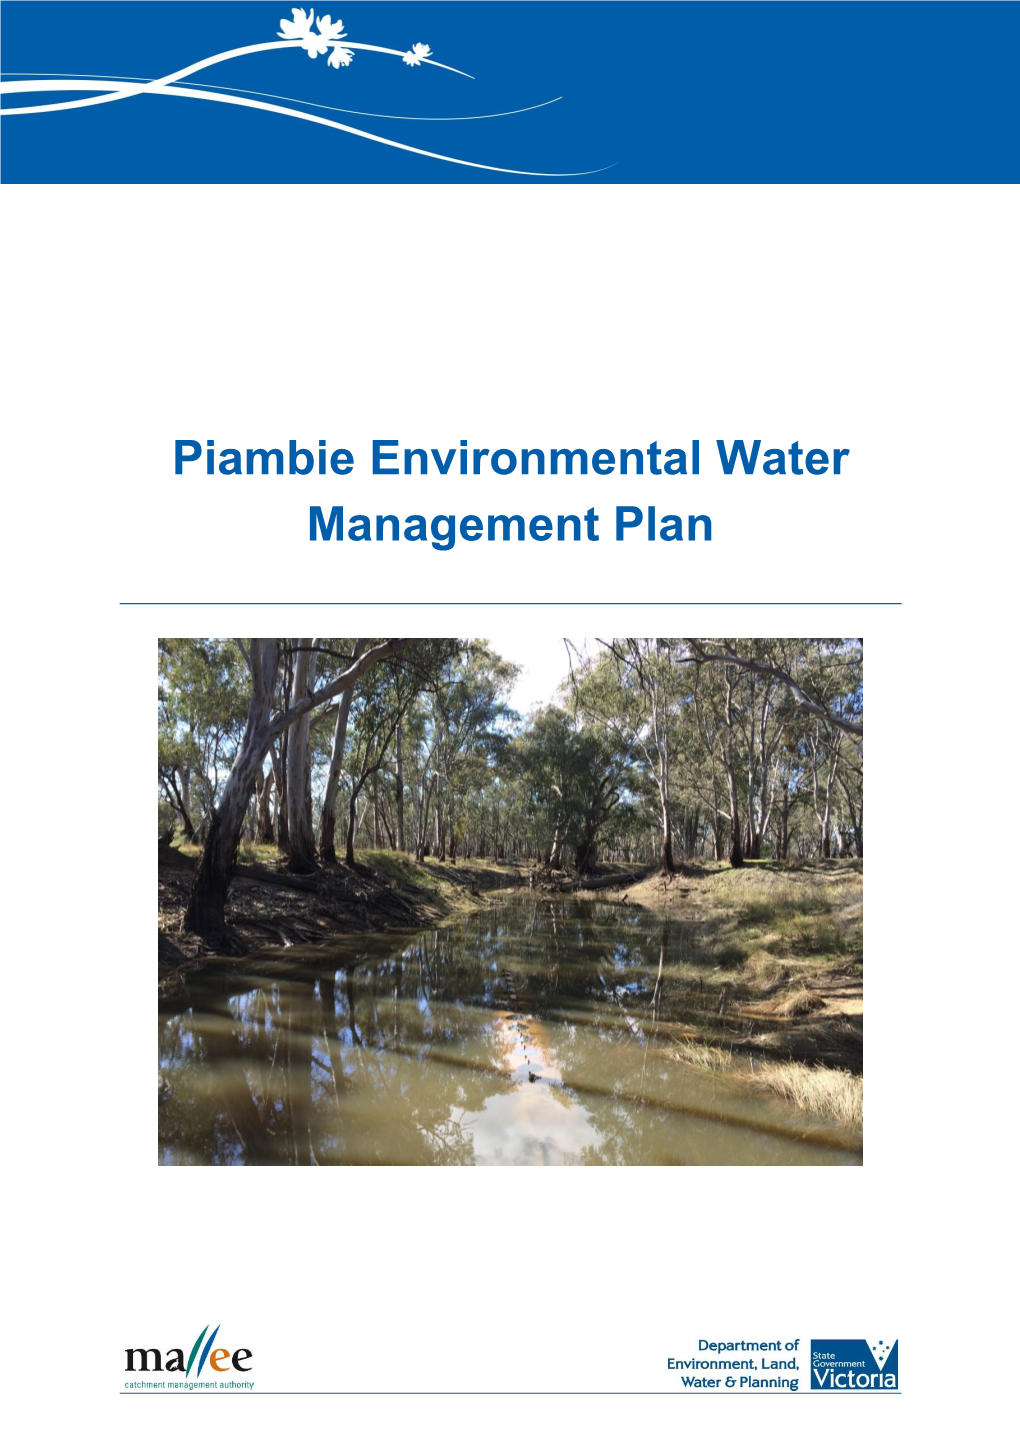 Piambie Environmental Water Management Plan